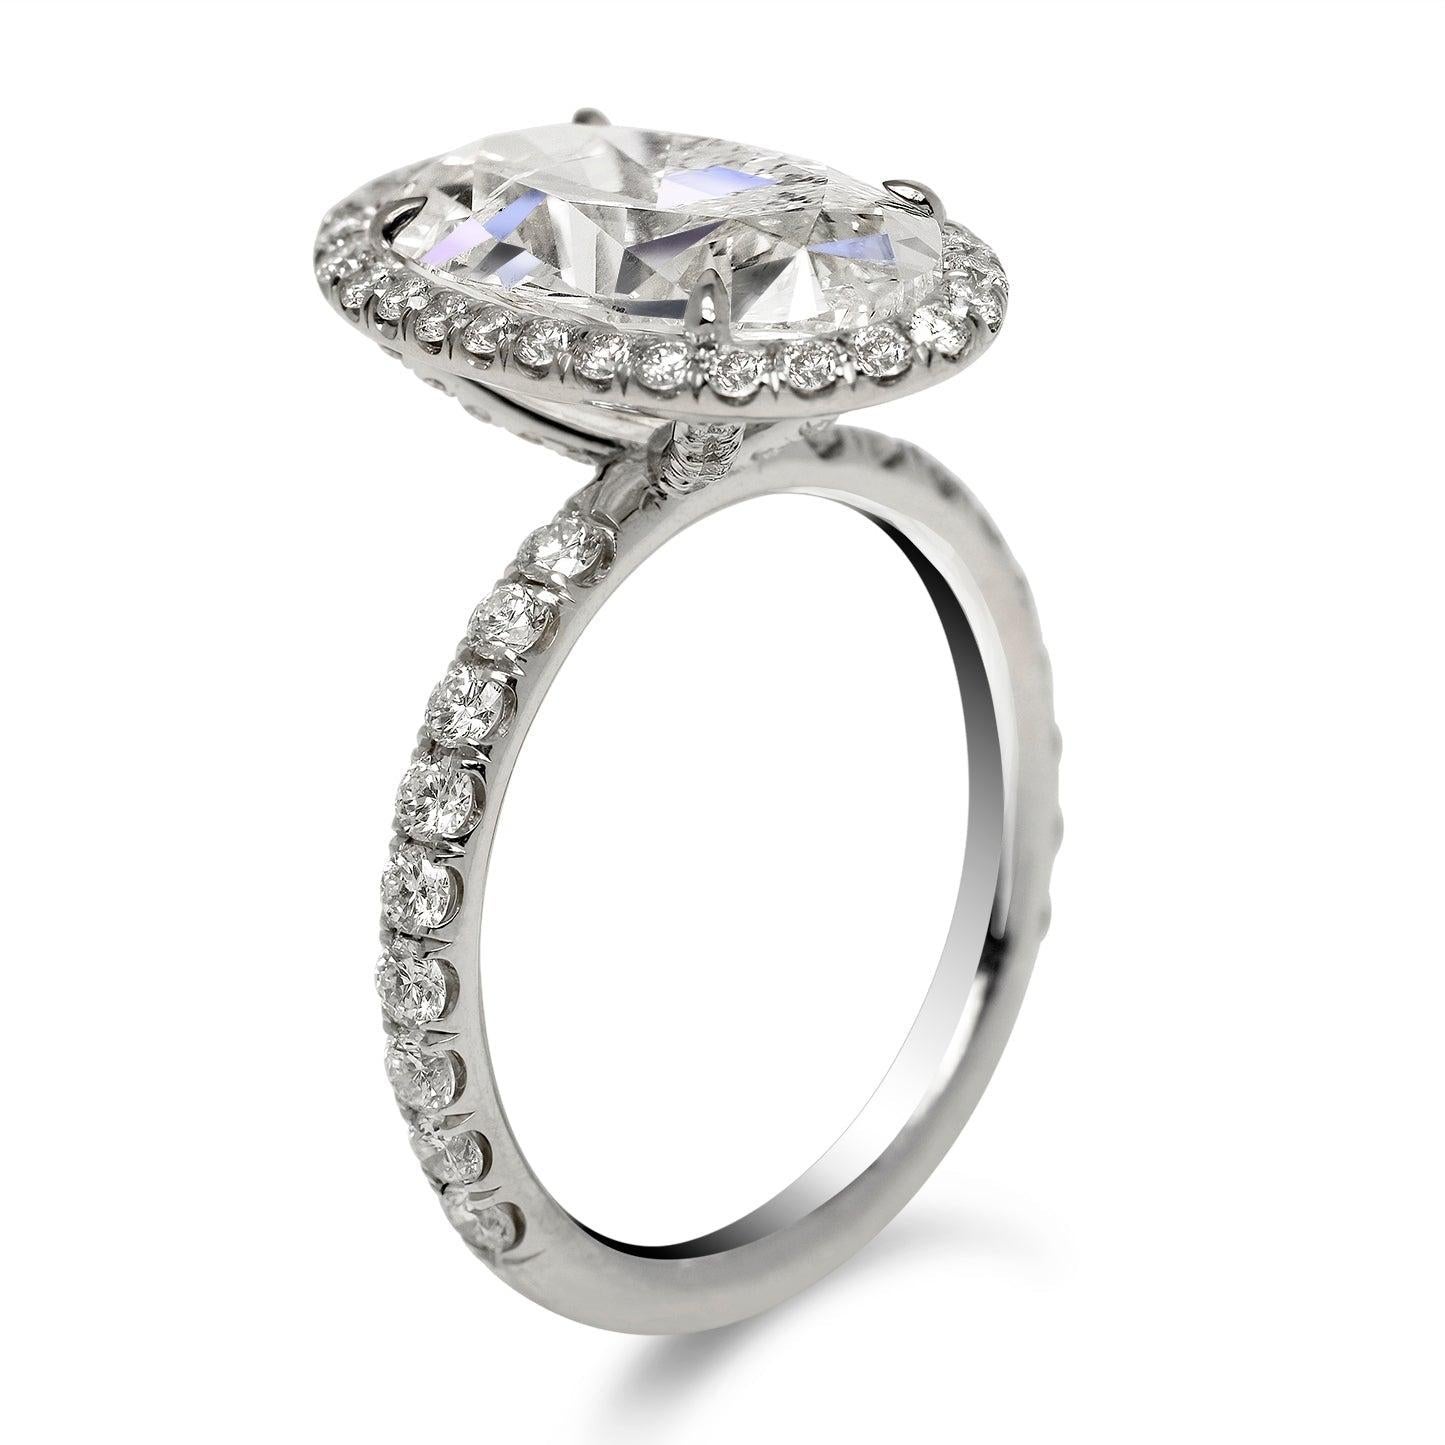 4 carat oval cut diamond ring